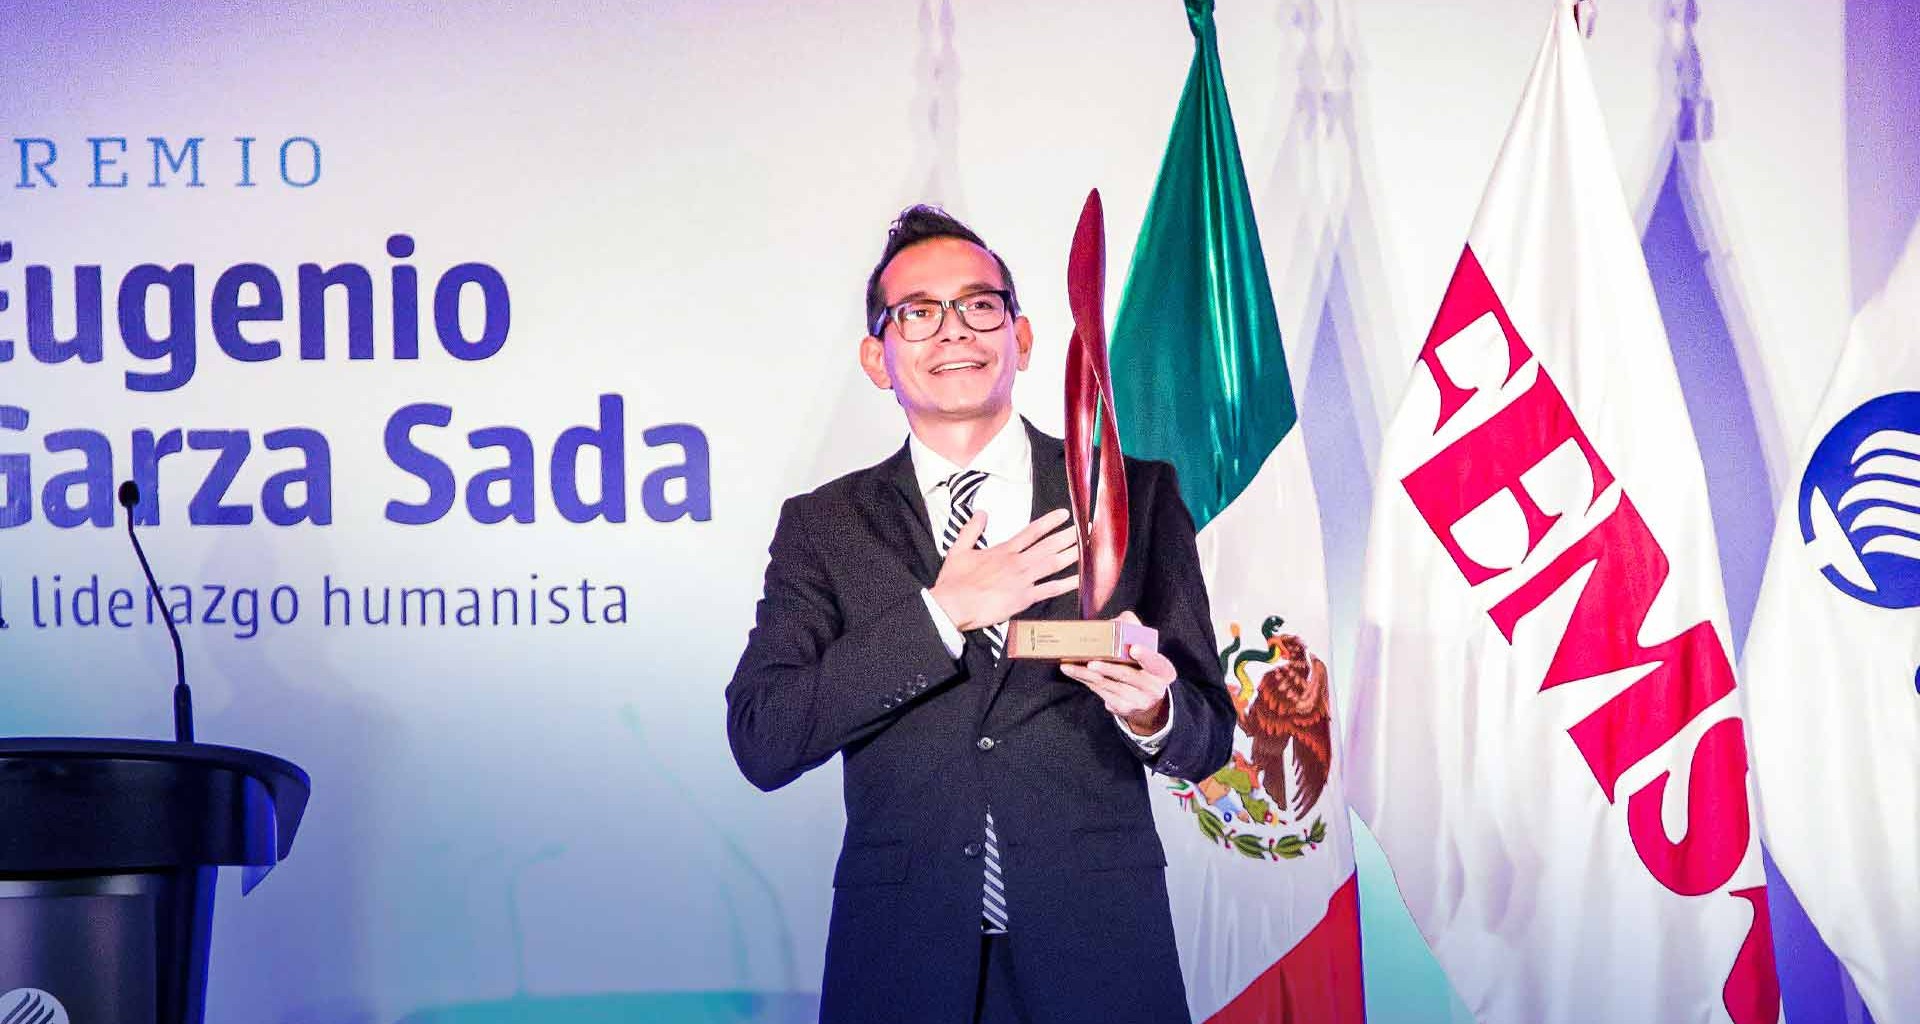 Entrega del Premio Eugenio Garza Sada 2021 por parte de FEMSA y el Tec de Monterrey.